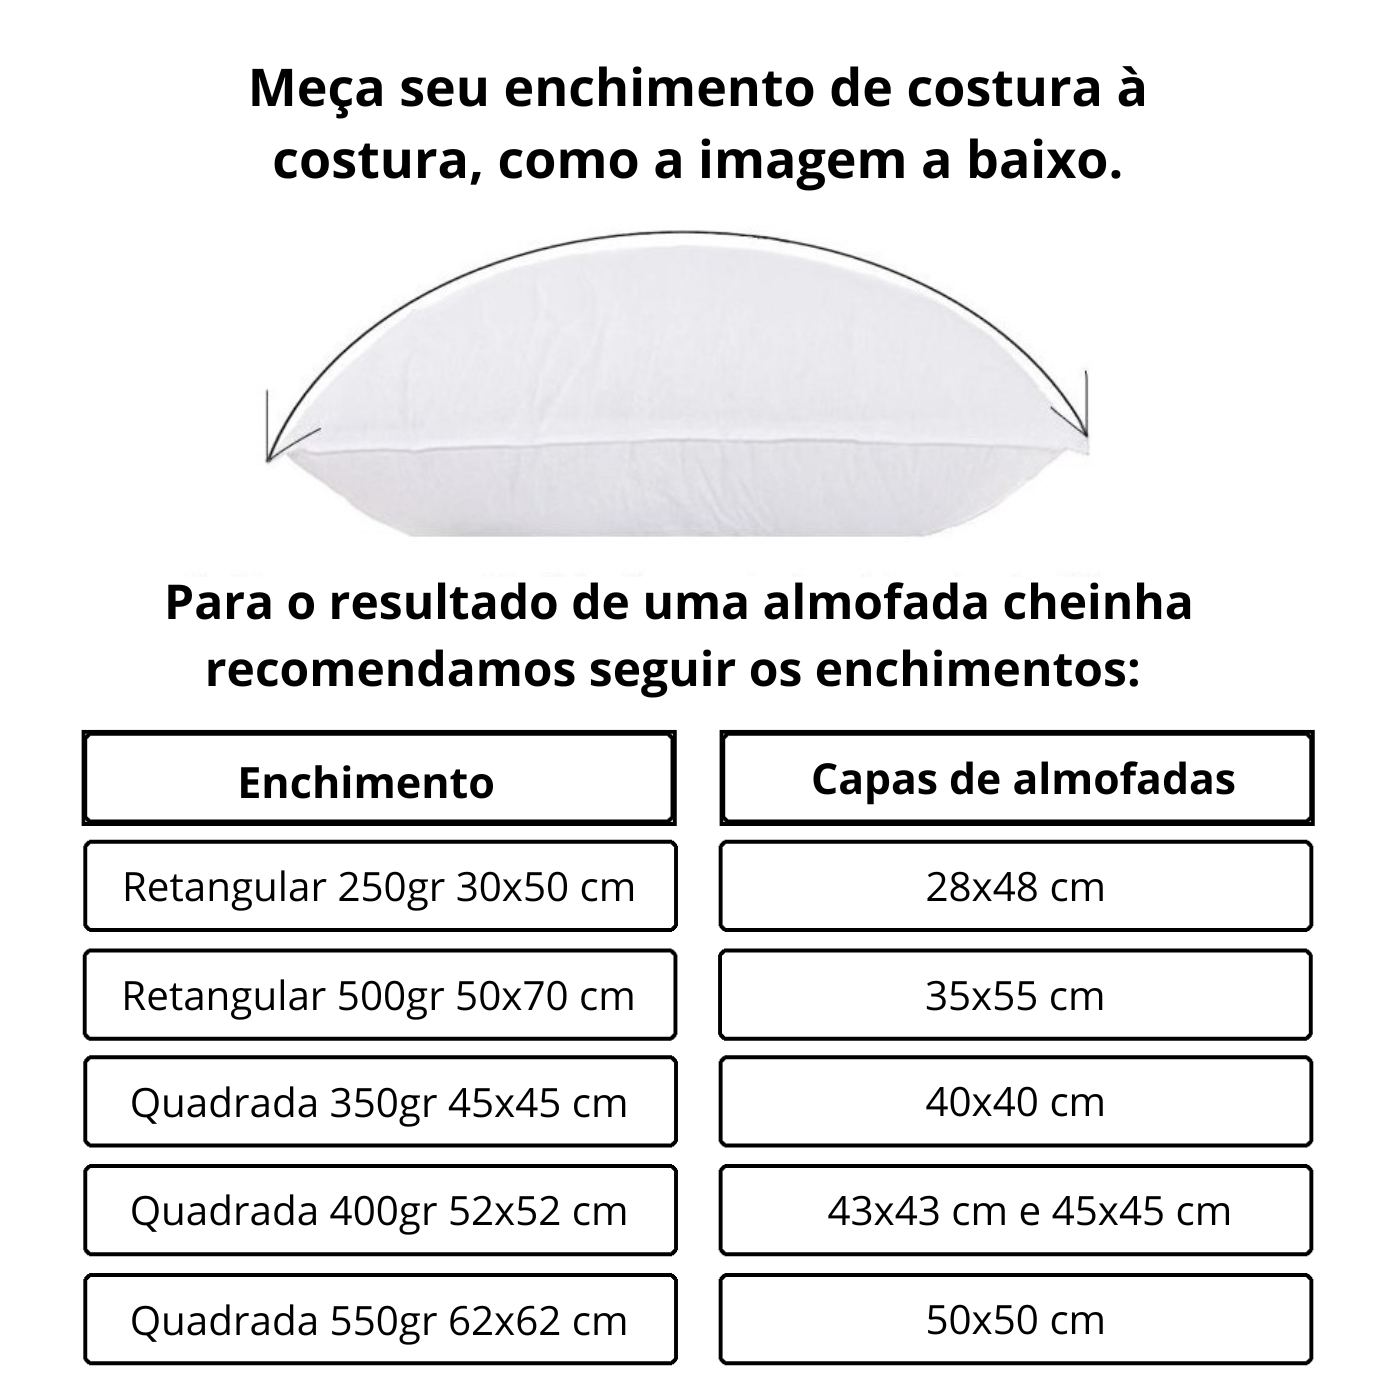 1 Refil Enchimento para Almofada com 350g Fibra de Silicone - Quadrada 45x45cm